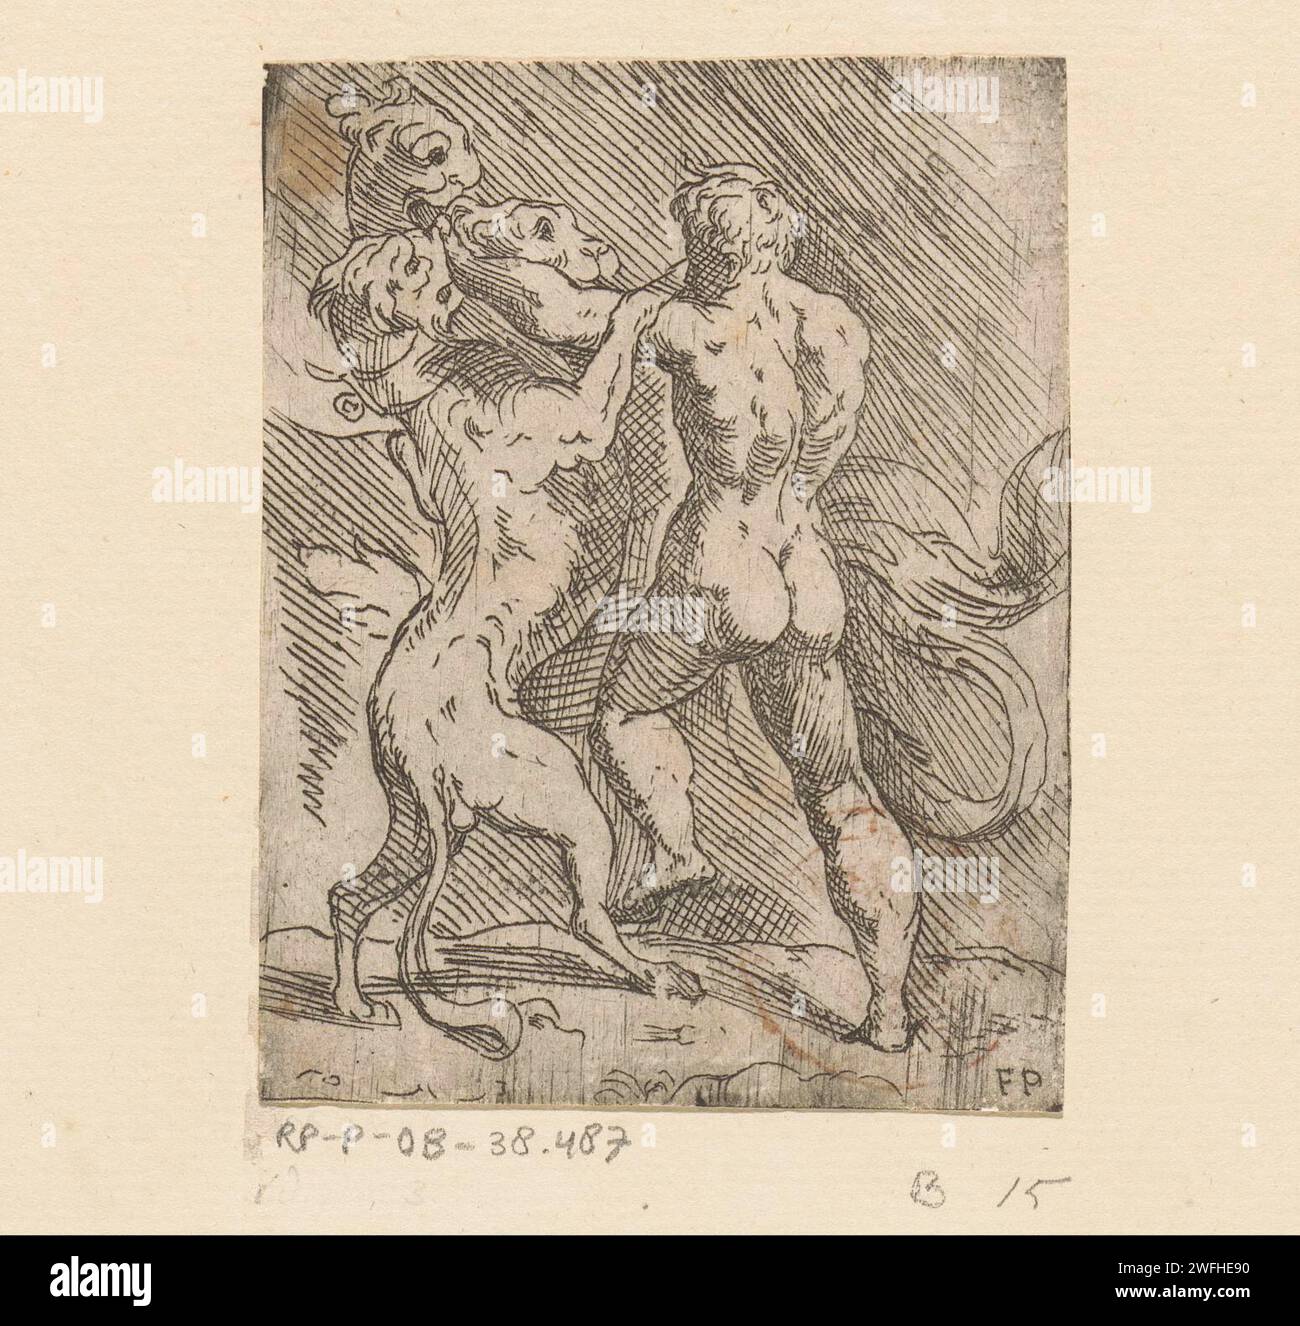 Herkules in einem Kampf mit Cerberus, Monogrammist FP (Italien; 16. Jahrhundert), um 1500 - um 1599 Druck Herkules in einem Kampf mit dem dreiköpfigen Hund Cerberus, der den Eintritt in die Unterwelt überwacht. Italien Papier, das Cerberus, den drei- oder mehrköpfigen Hund, ätzt; "Cerbero" (Ripa). Herkules begegnet verschiedenen Personen im Hades Stockfoto